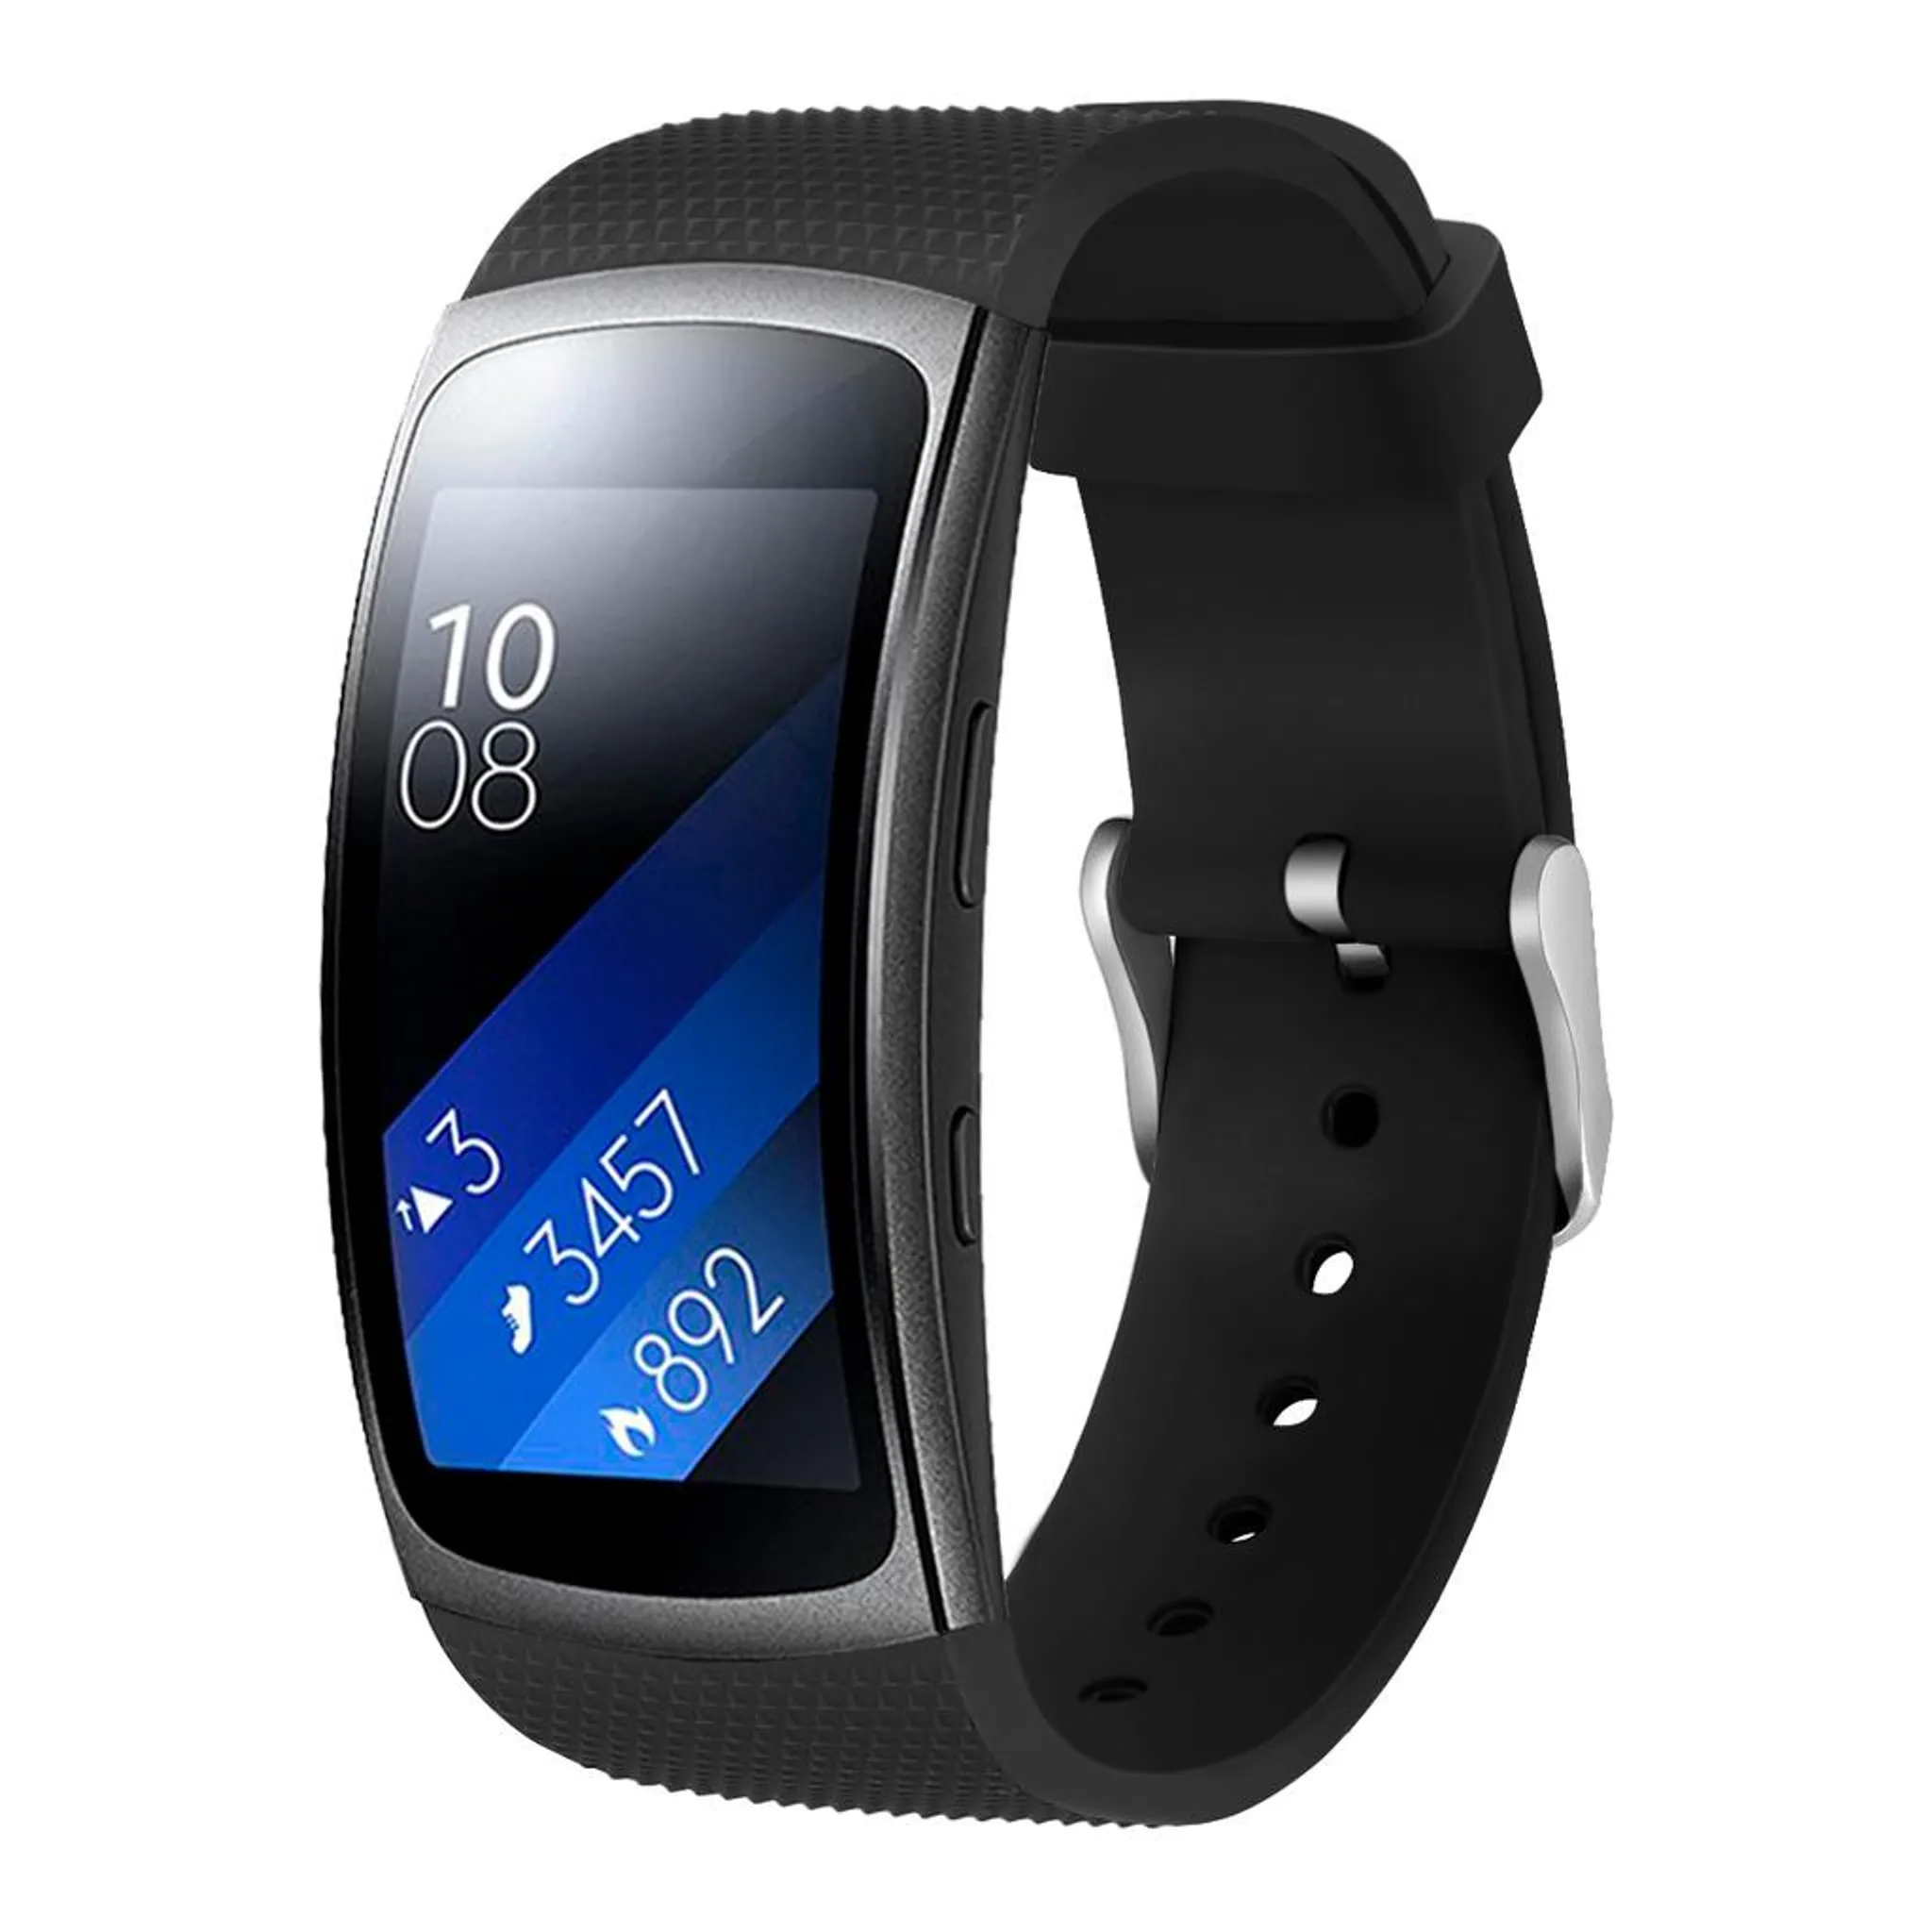 Verlaten verdund Prestige Samsung Gear Fit2 Armband Silikon - schwarz | Kaufland.de